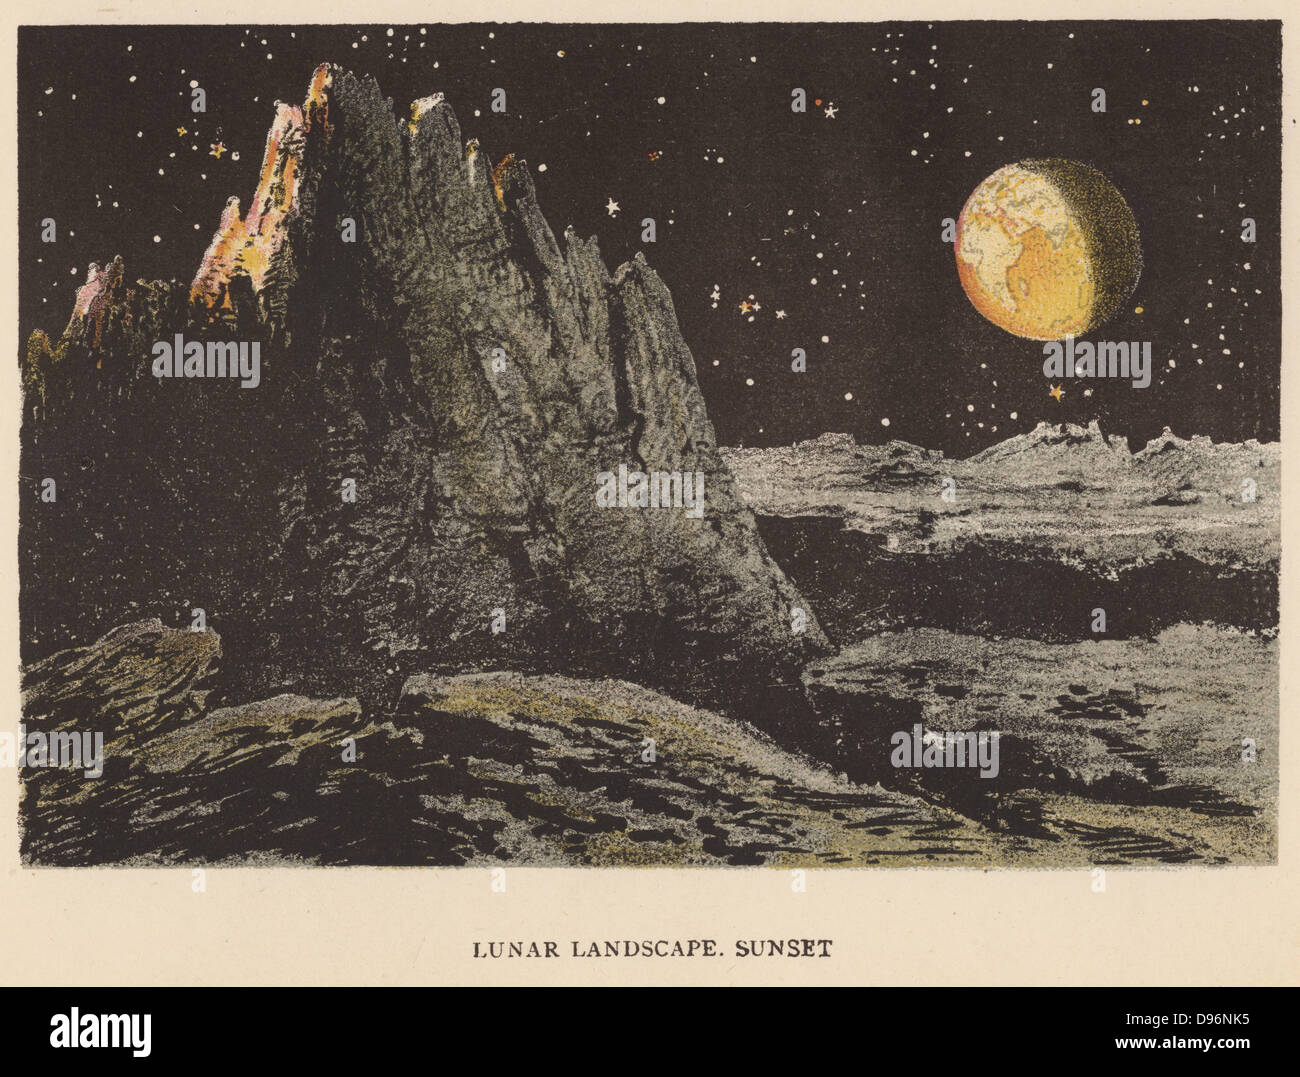 Artista della impressione di paesaggio lunare al tramonto. La terra è in alto a destra. Le stelle sono visibili nel cielo lunare anche se essa non è scura perché la Luna non ha atmosfera per disperdere la luce. Da 'SONU, luna e stelle', Agnes Giberne (Londra, 1884). Chromolithograph. Foto Stock